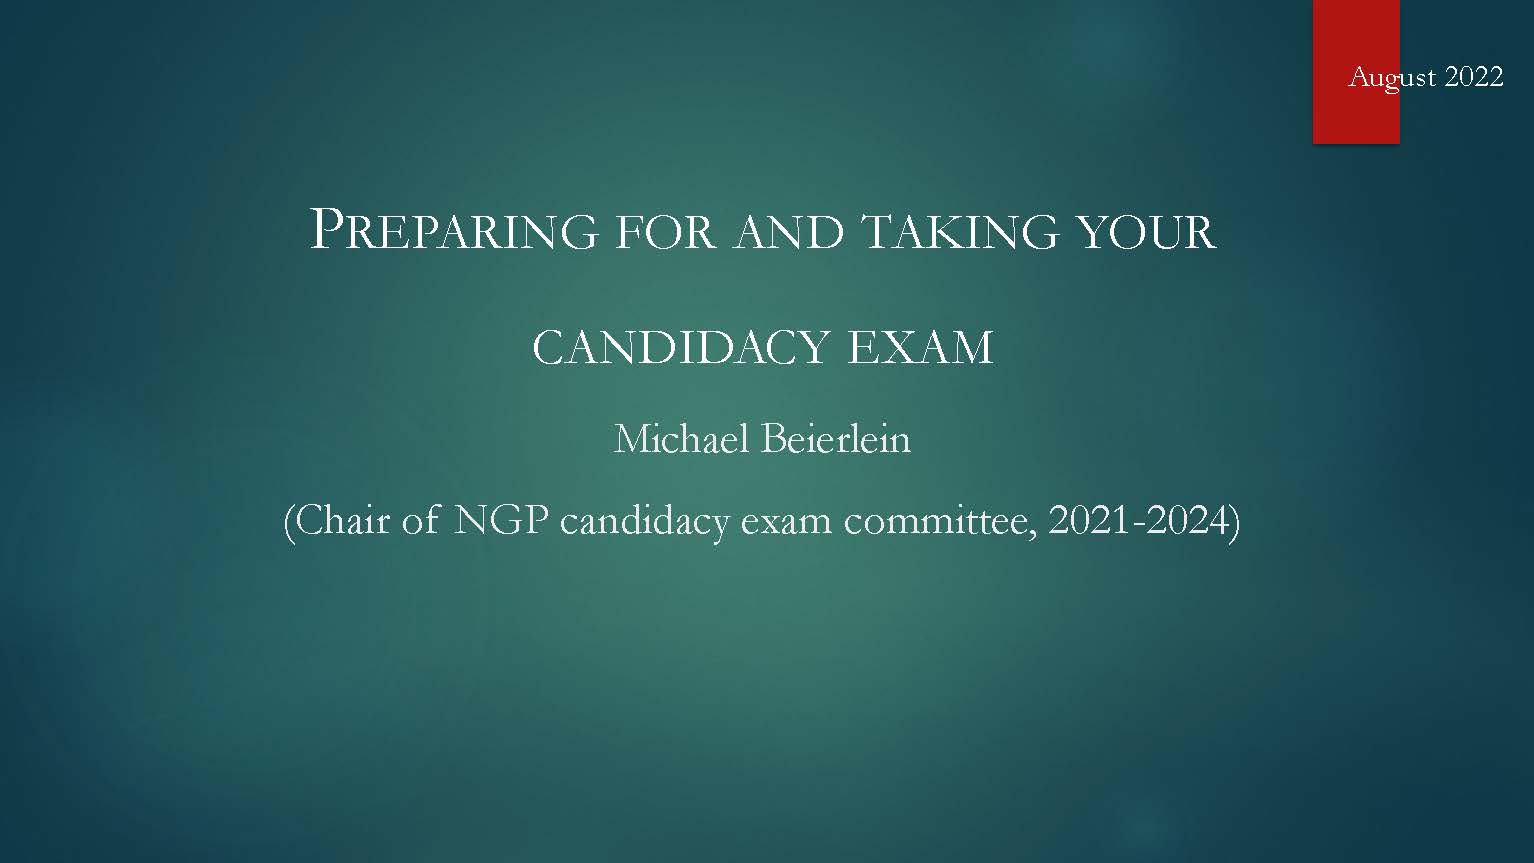 NGP Candidacy Exam Procedures Image